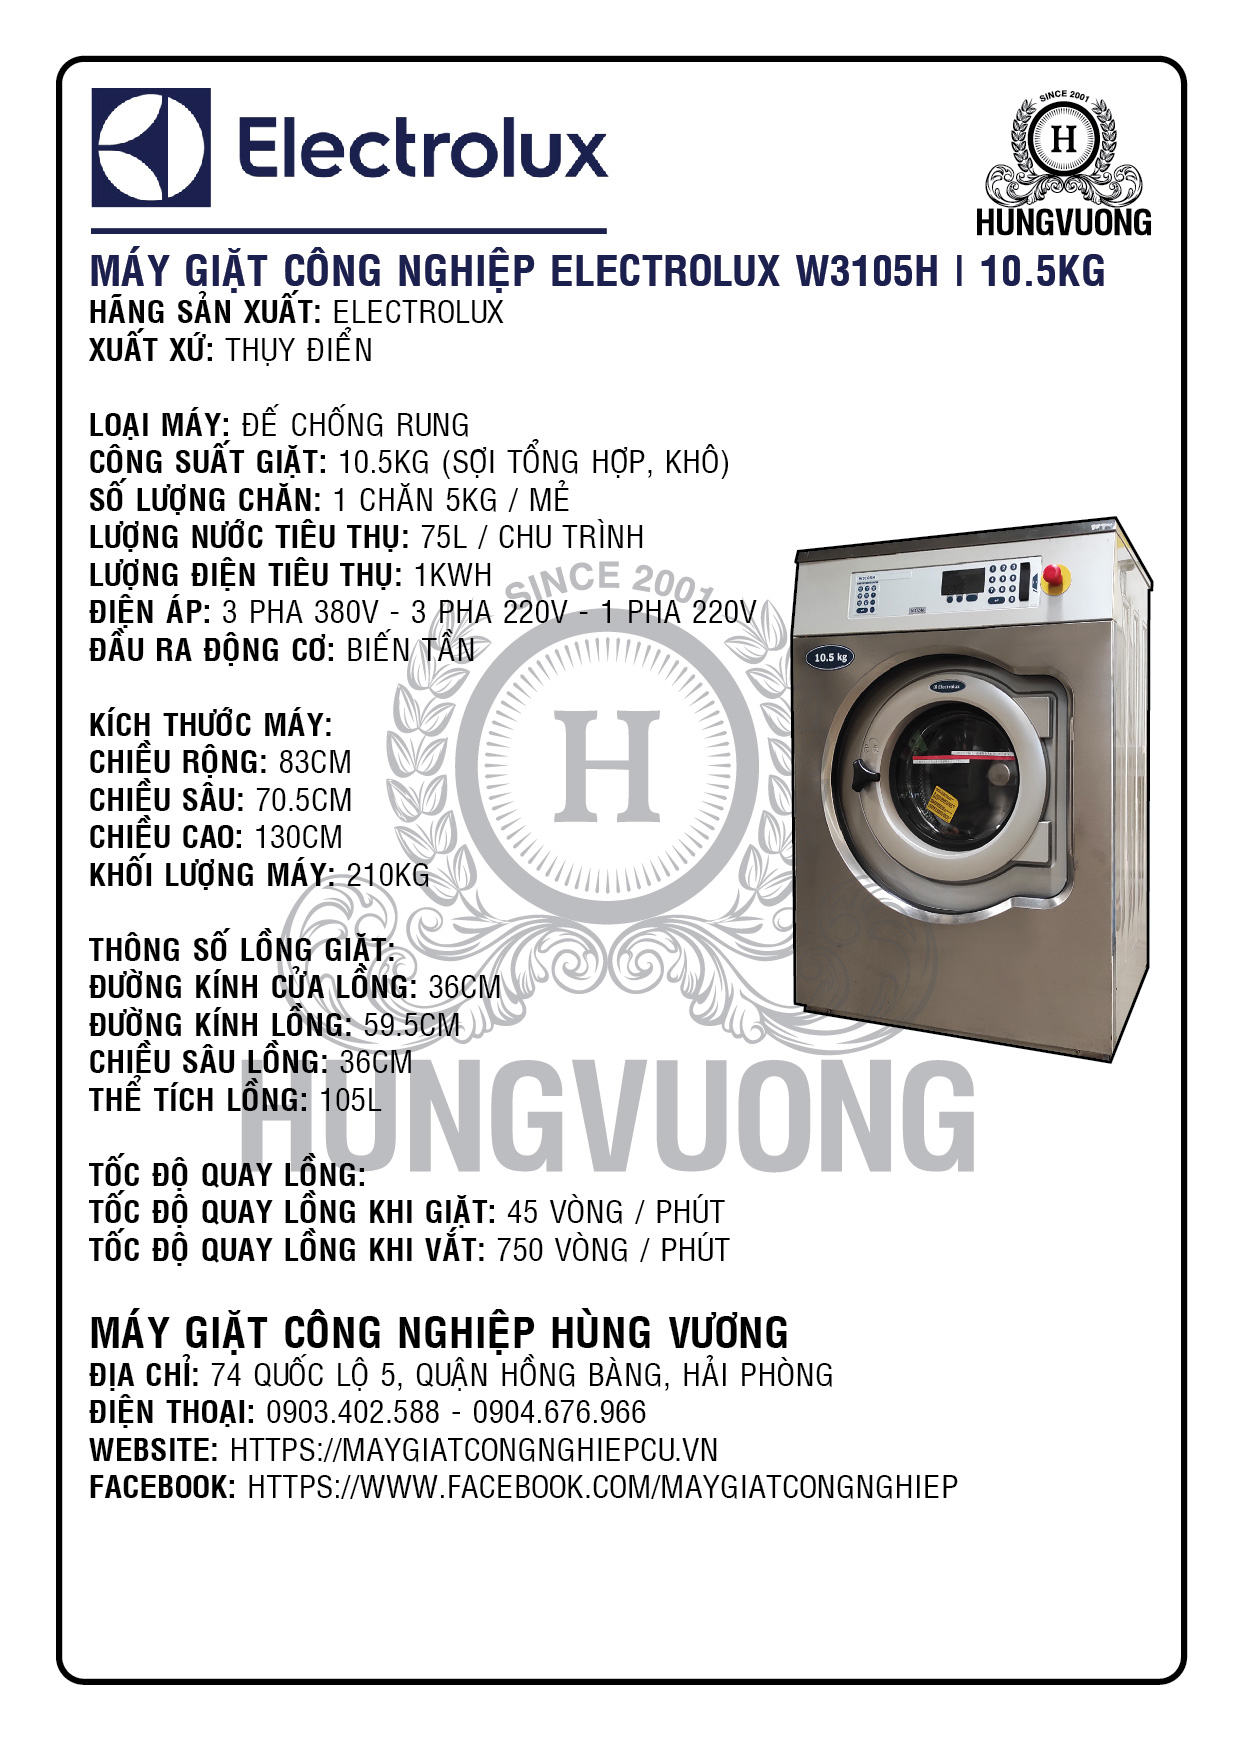 Thông số kỹ thuật máy giặt công nghiệp ELECTROLUX W3105H, 10.5kg, chống rung, biến tần, Thụy Điển